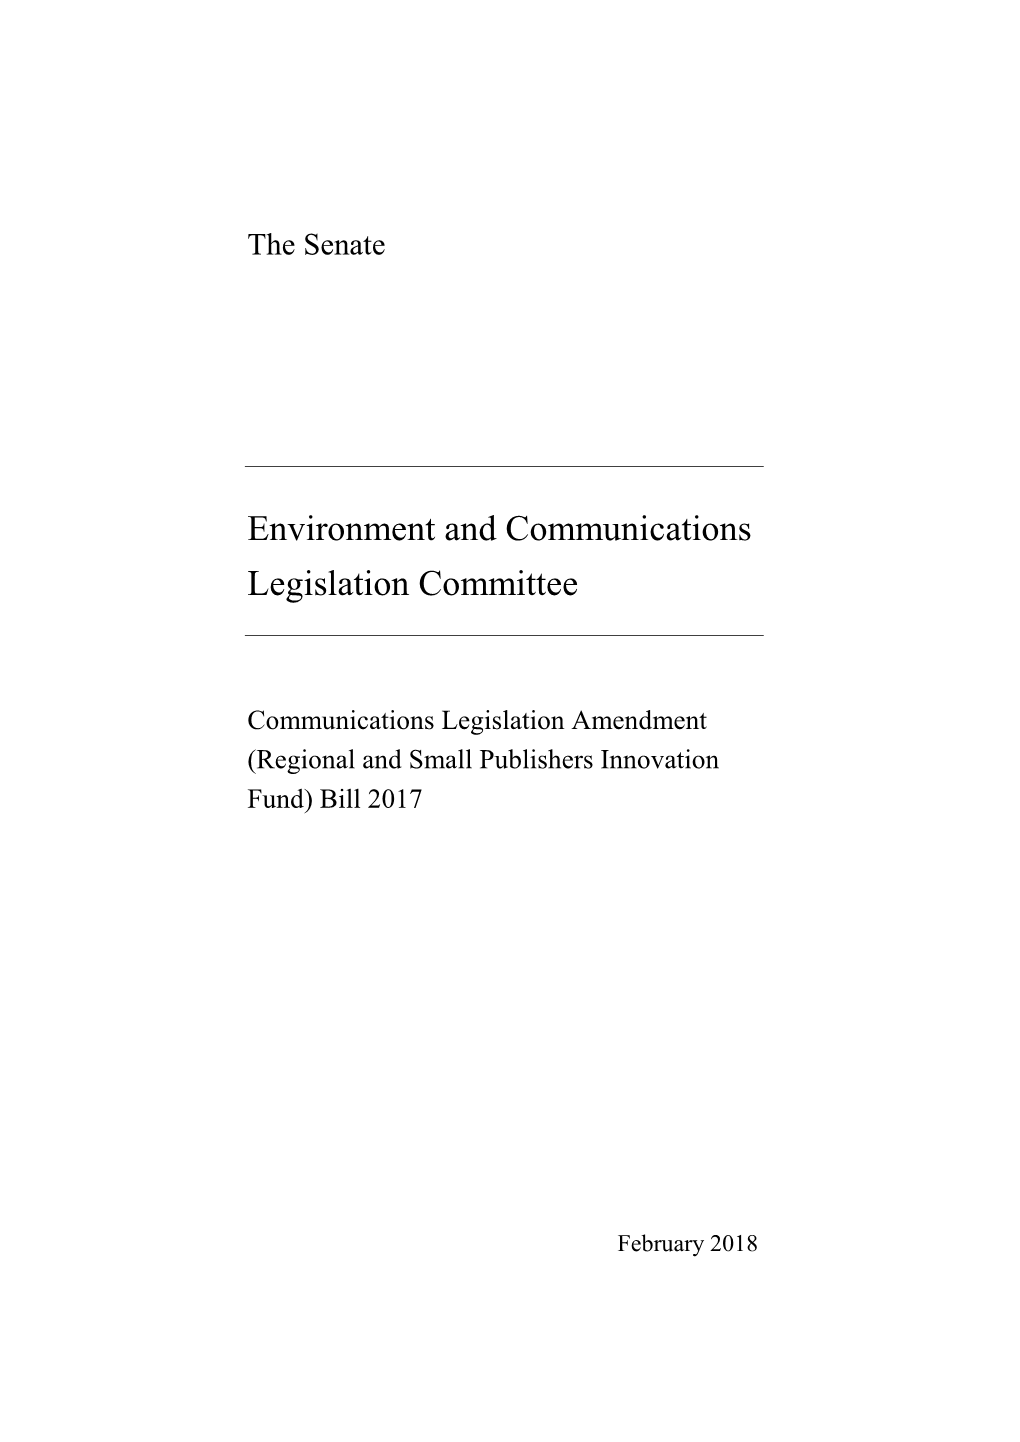 Report: Communications Legislation